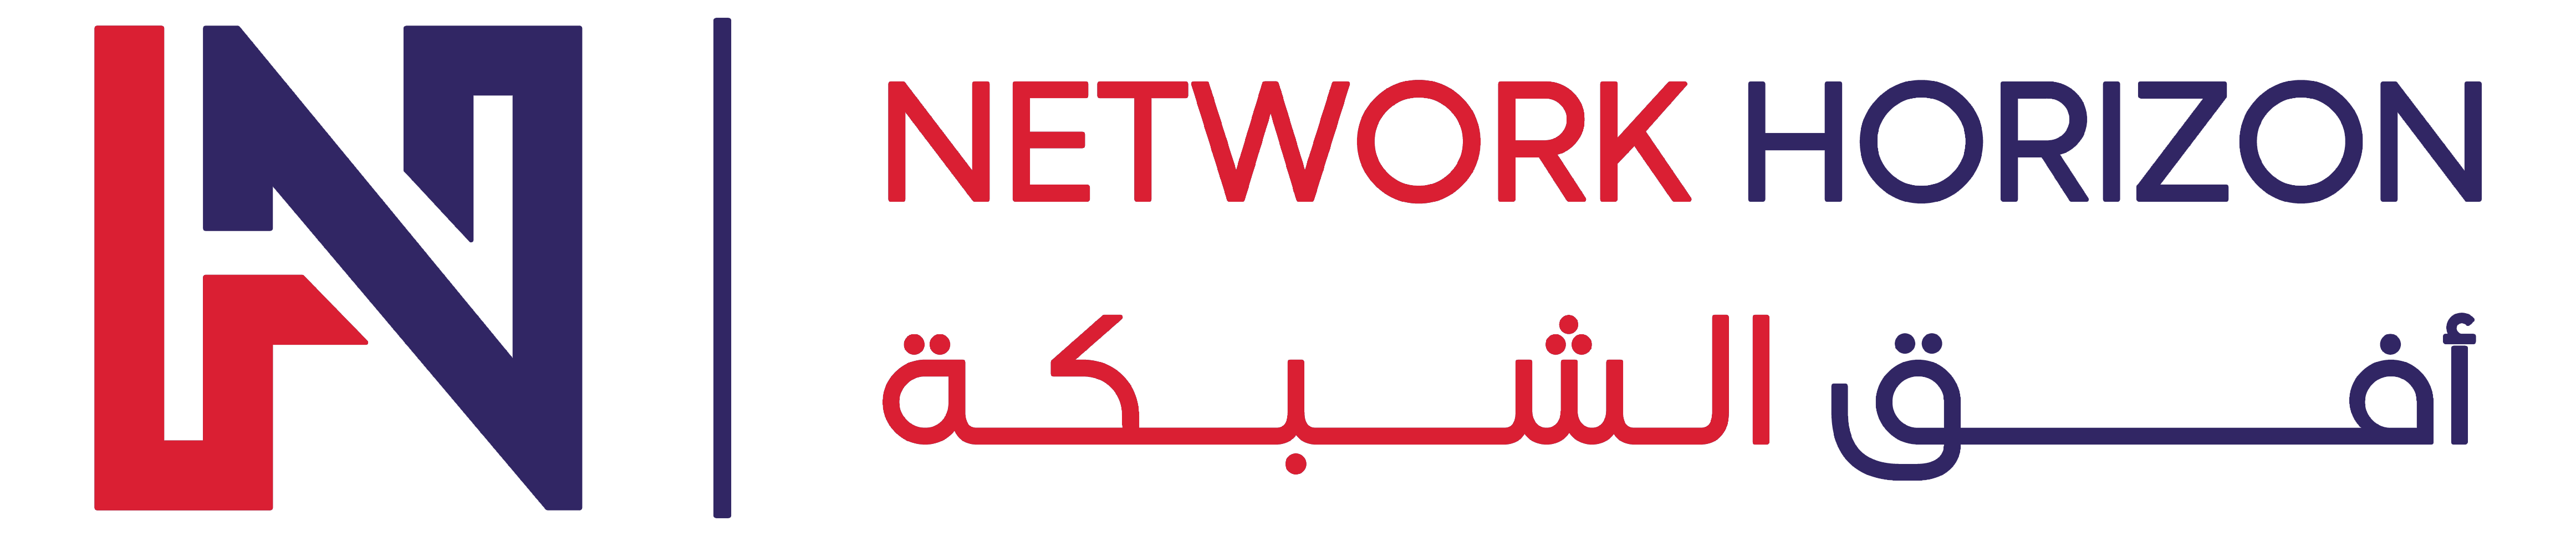 Network Horizon